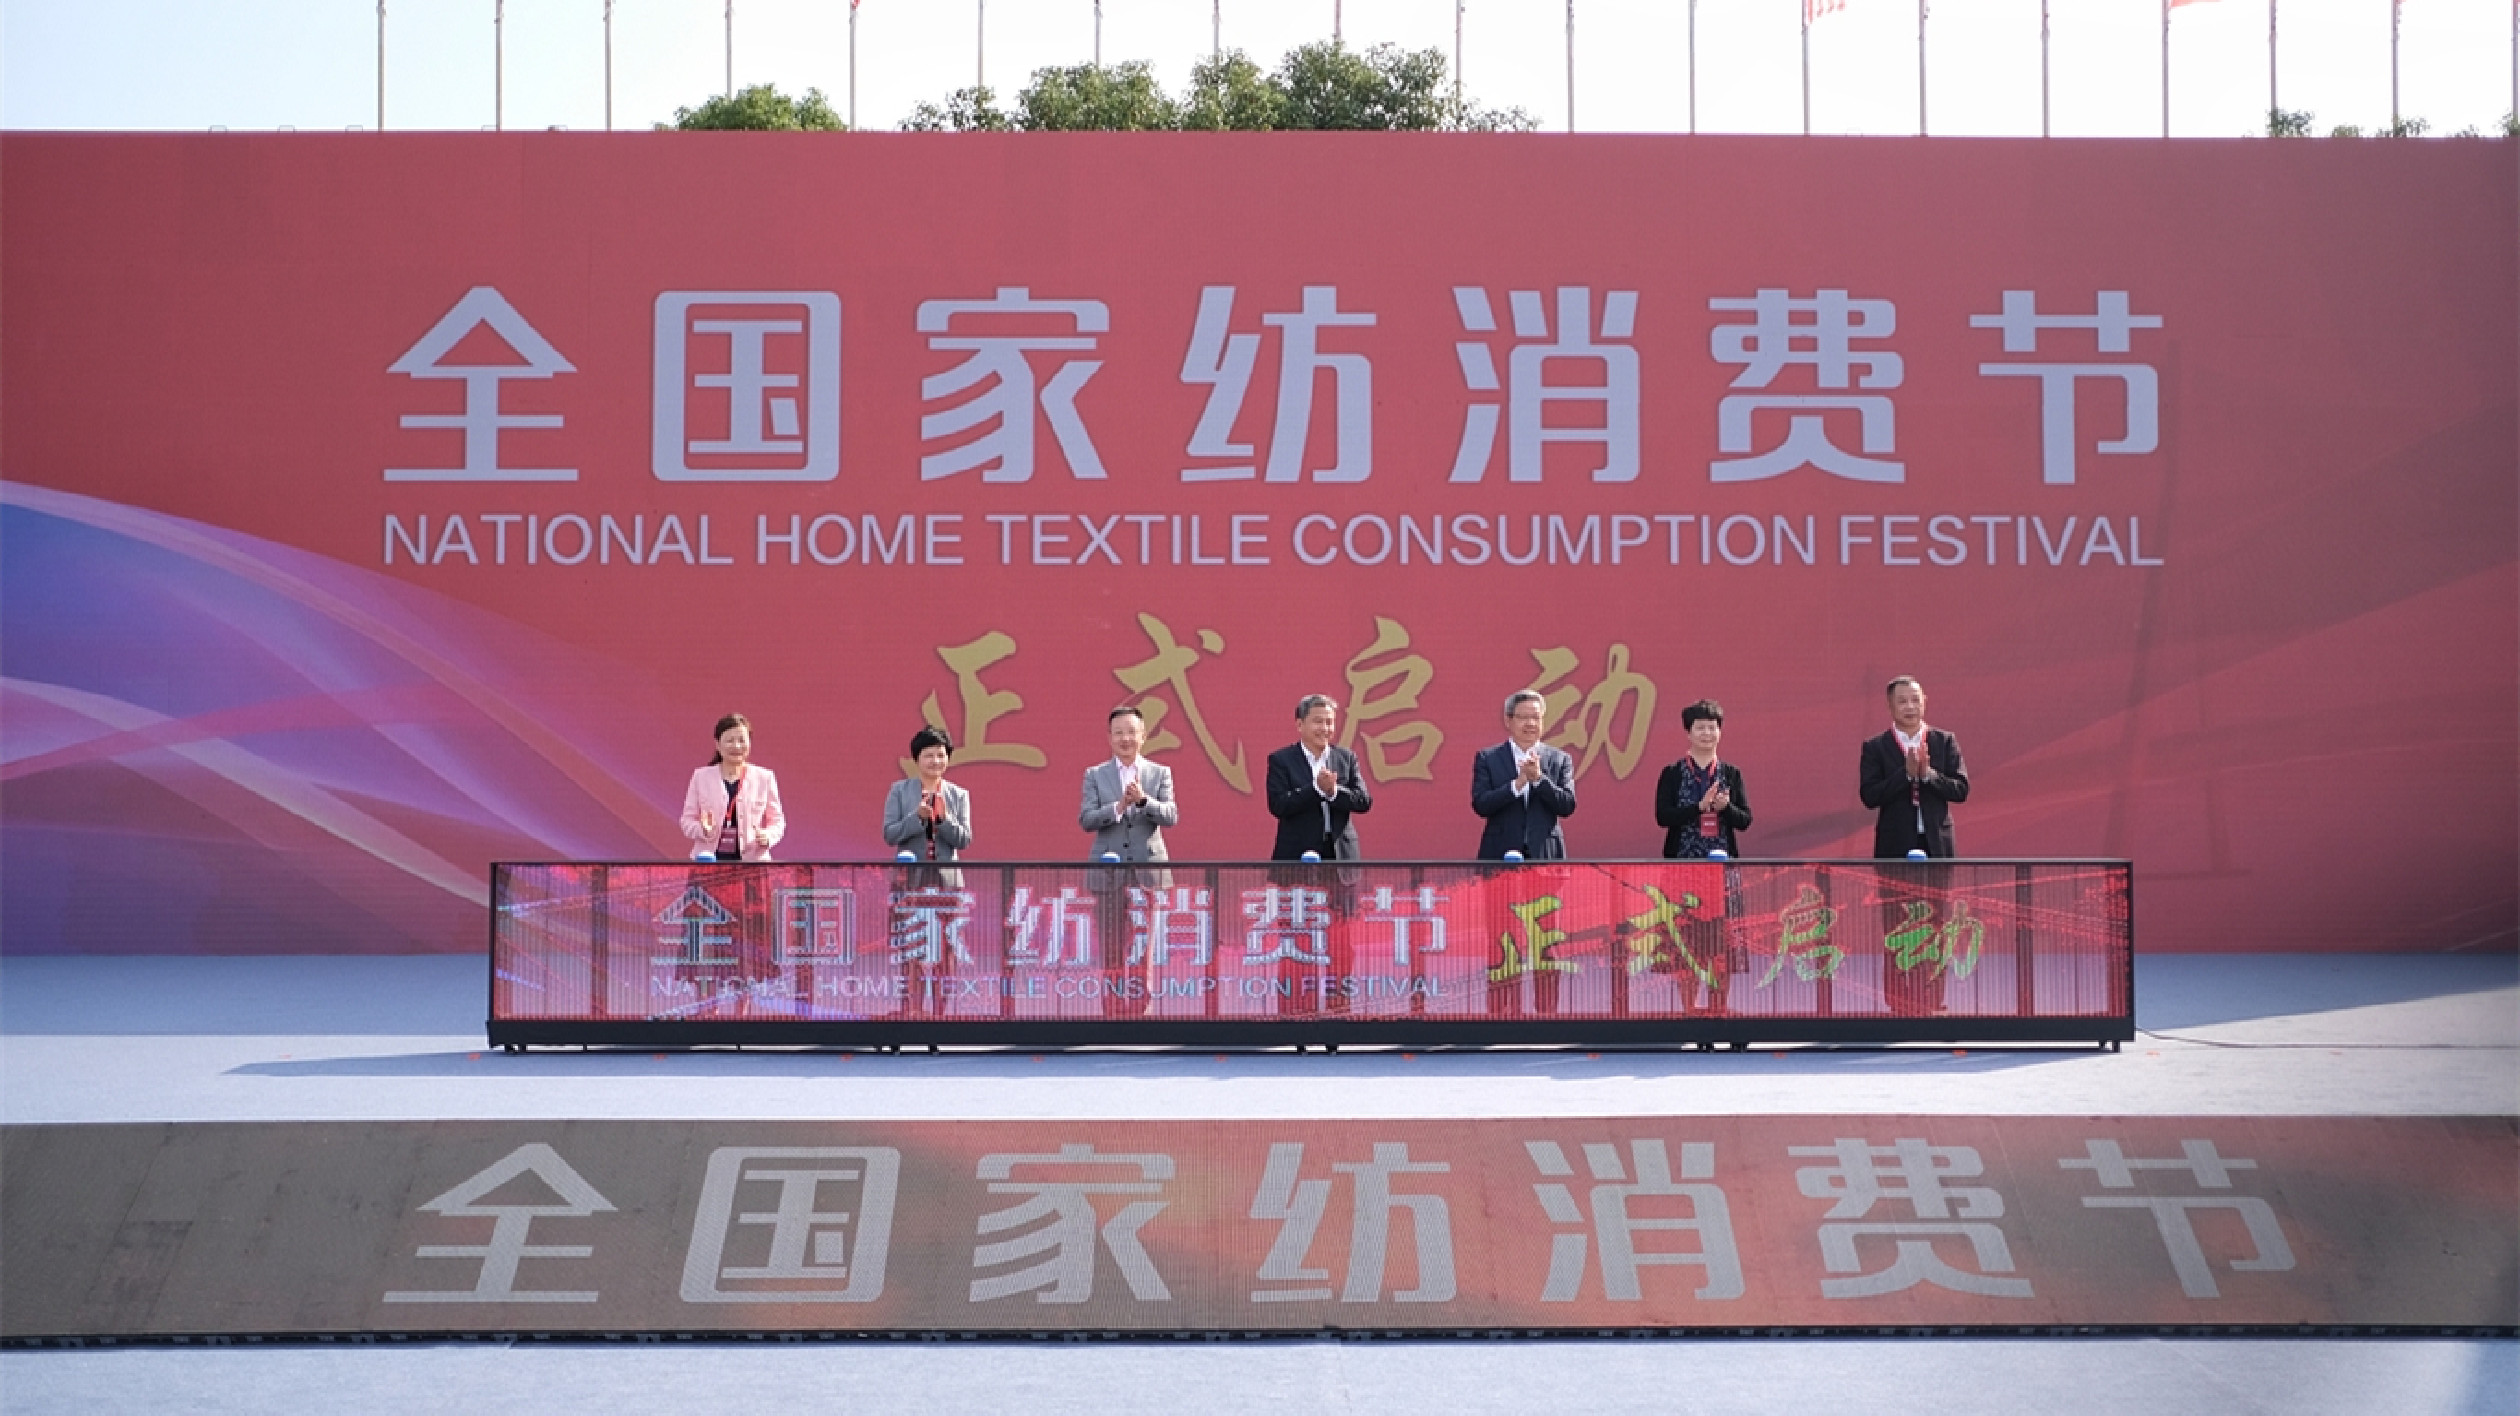 擴大內需供給 全國家紡消費節在江蘇南通舉行